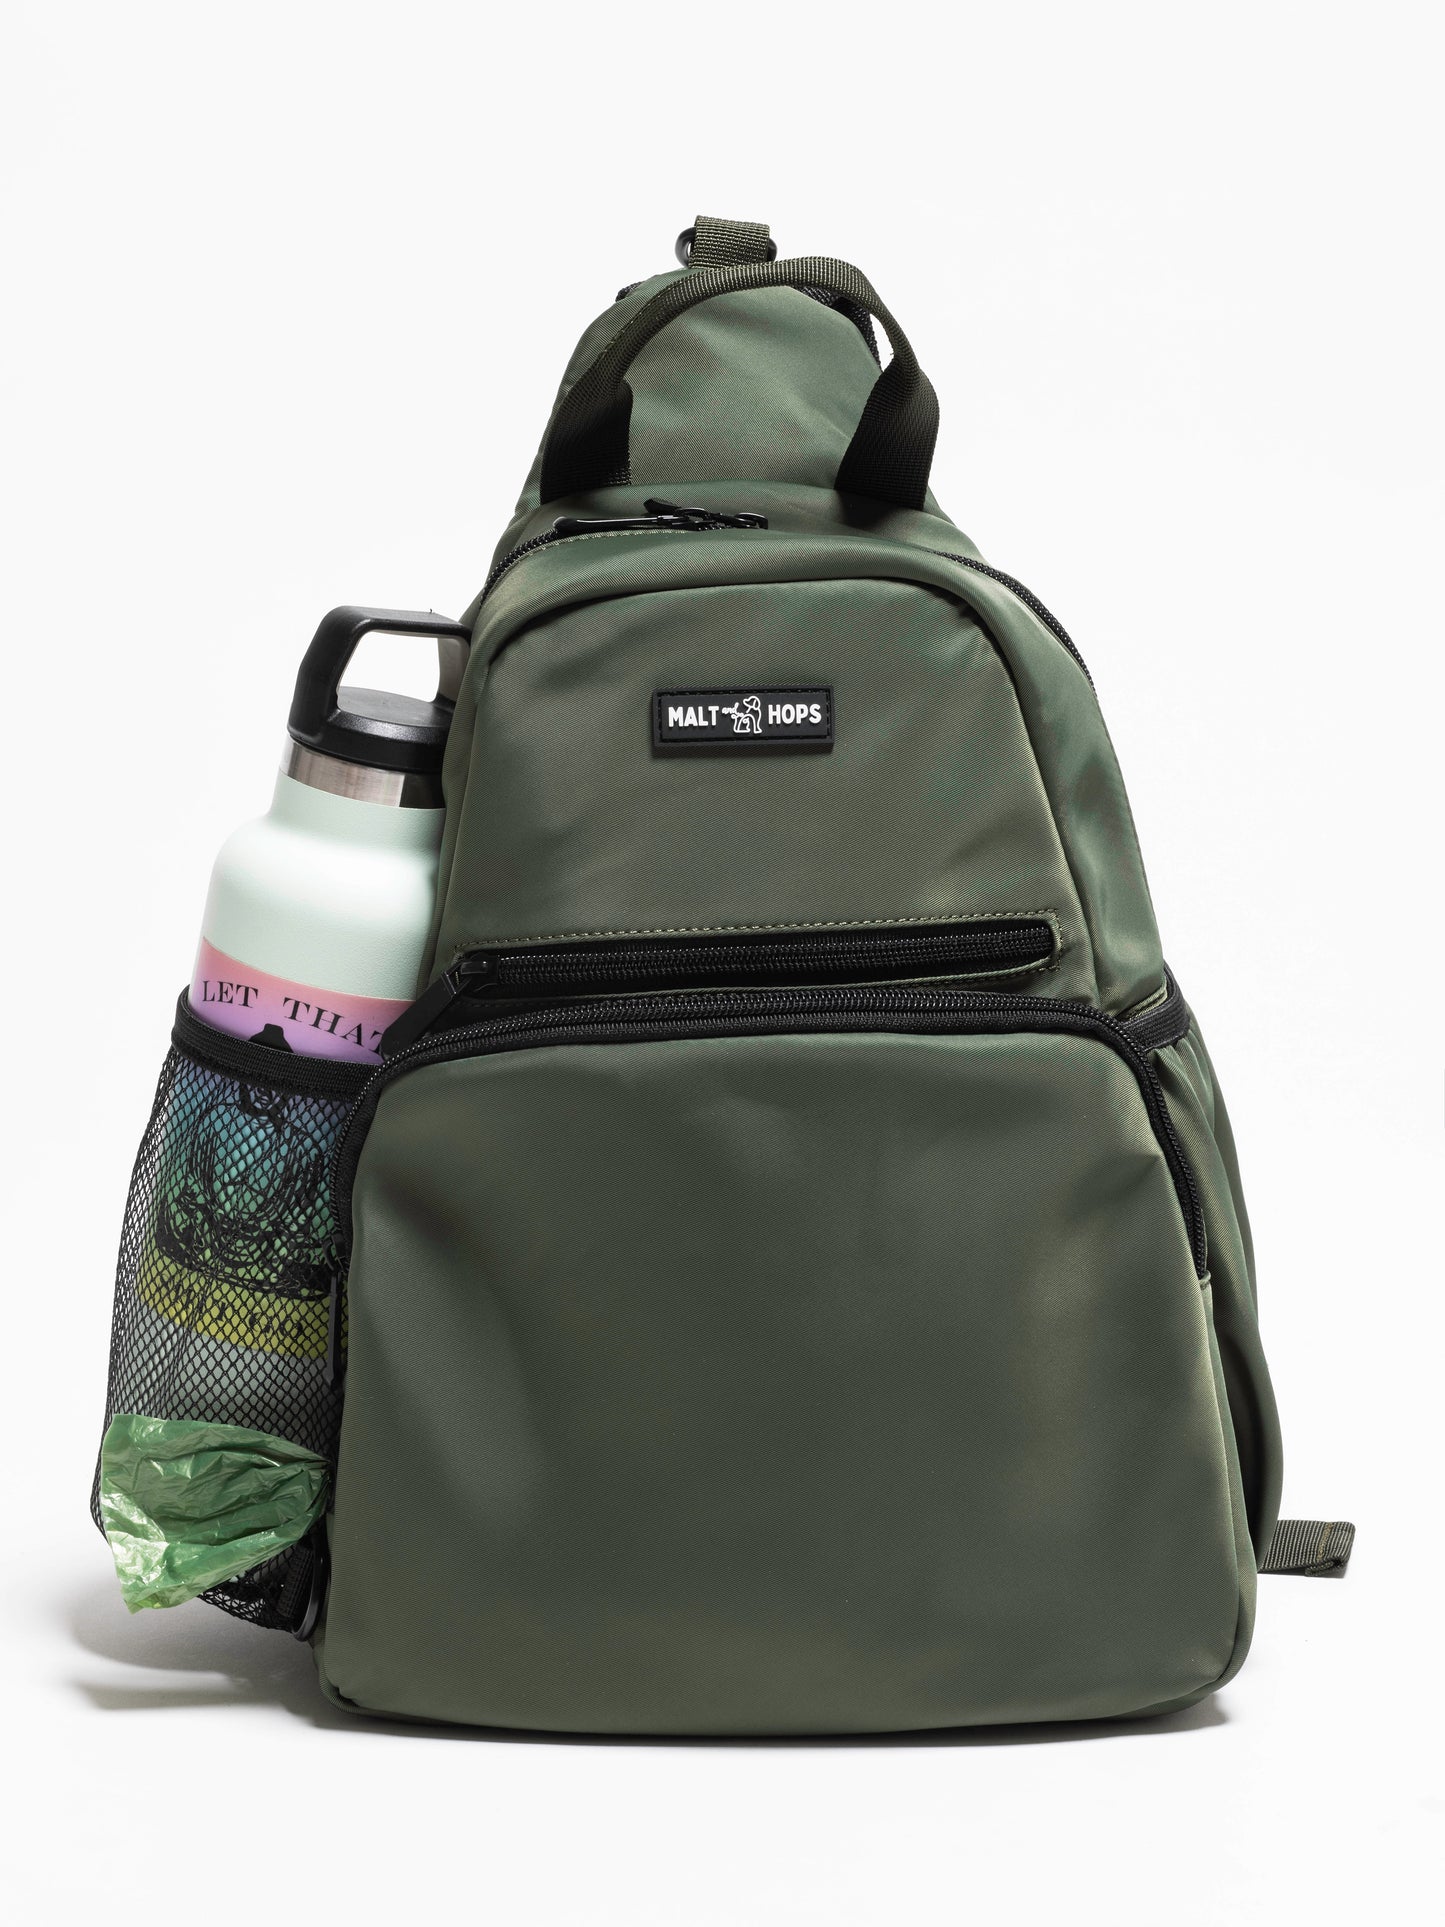 Olive Drab Gose Sling Backpack